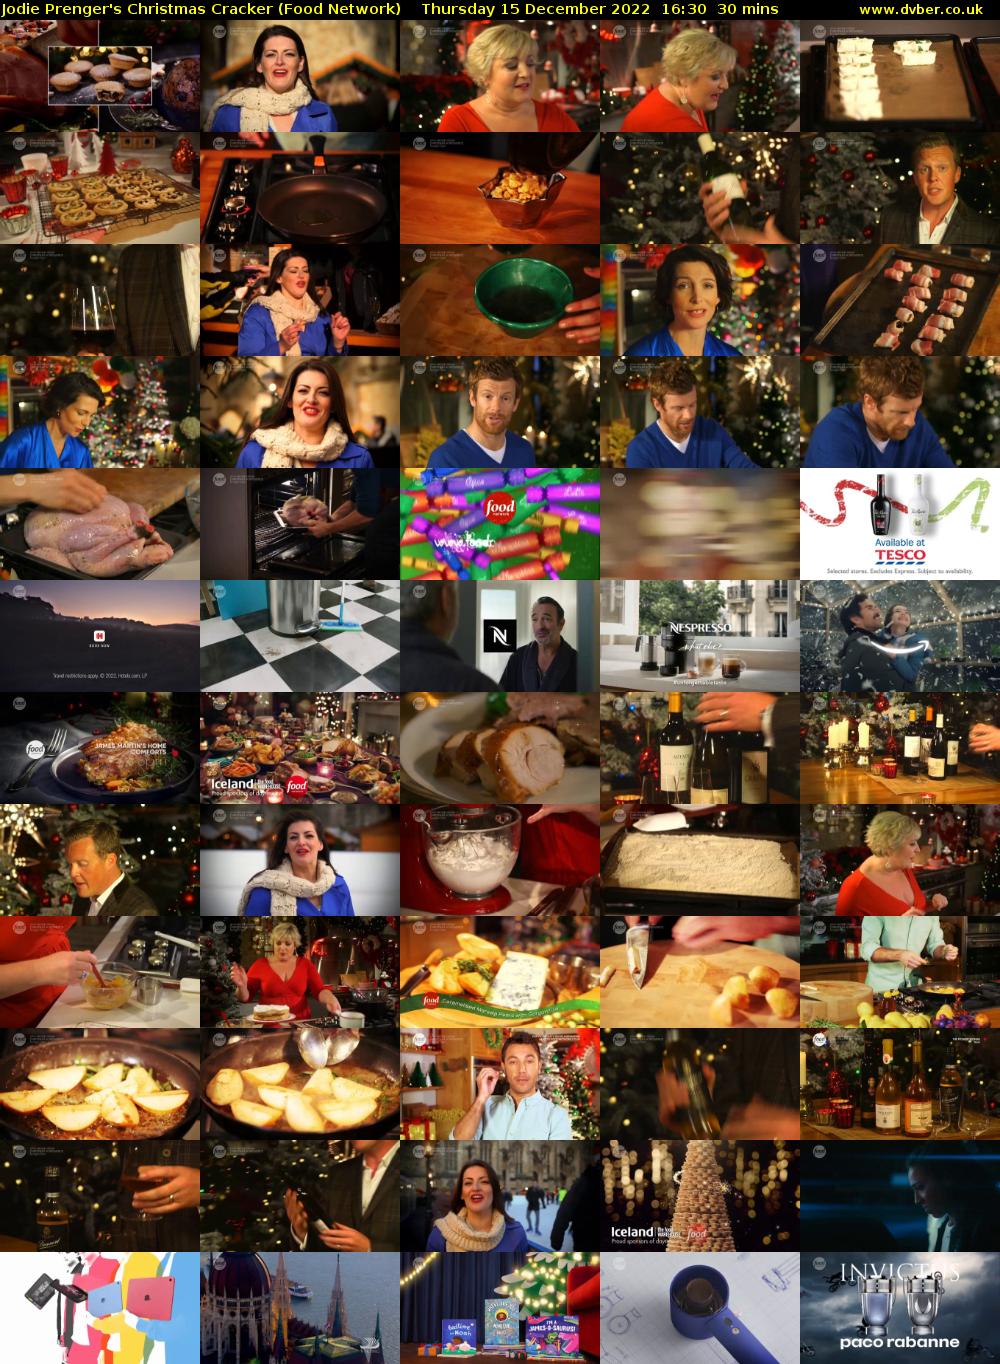 Jodie Prenger's Christmas Cracker (Food Network) Thursday 15 December 2022 16:30 - 17:00